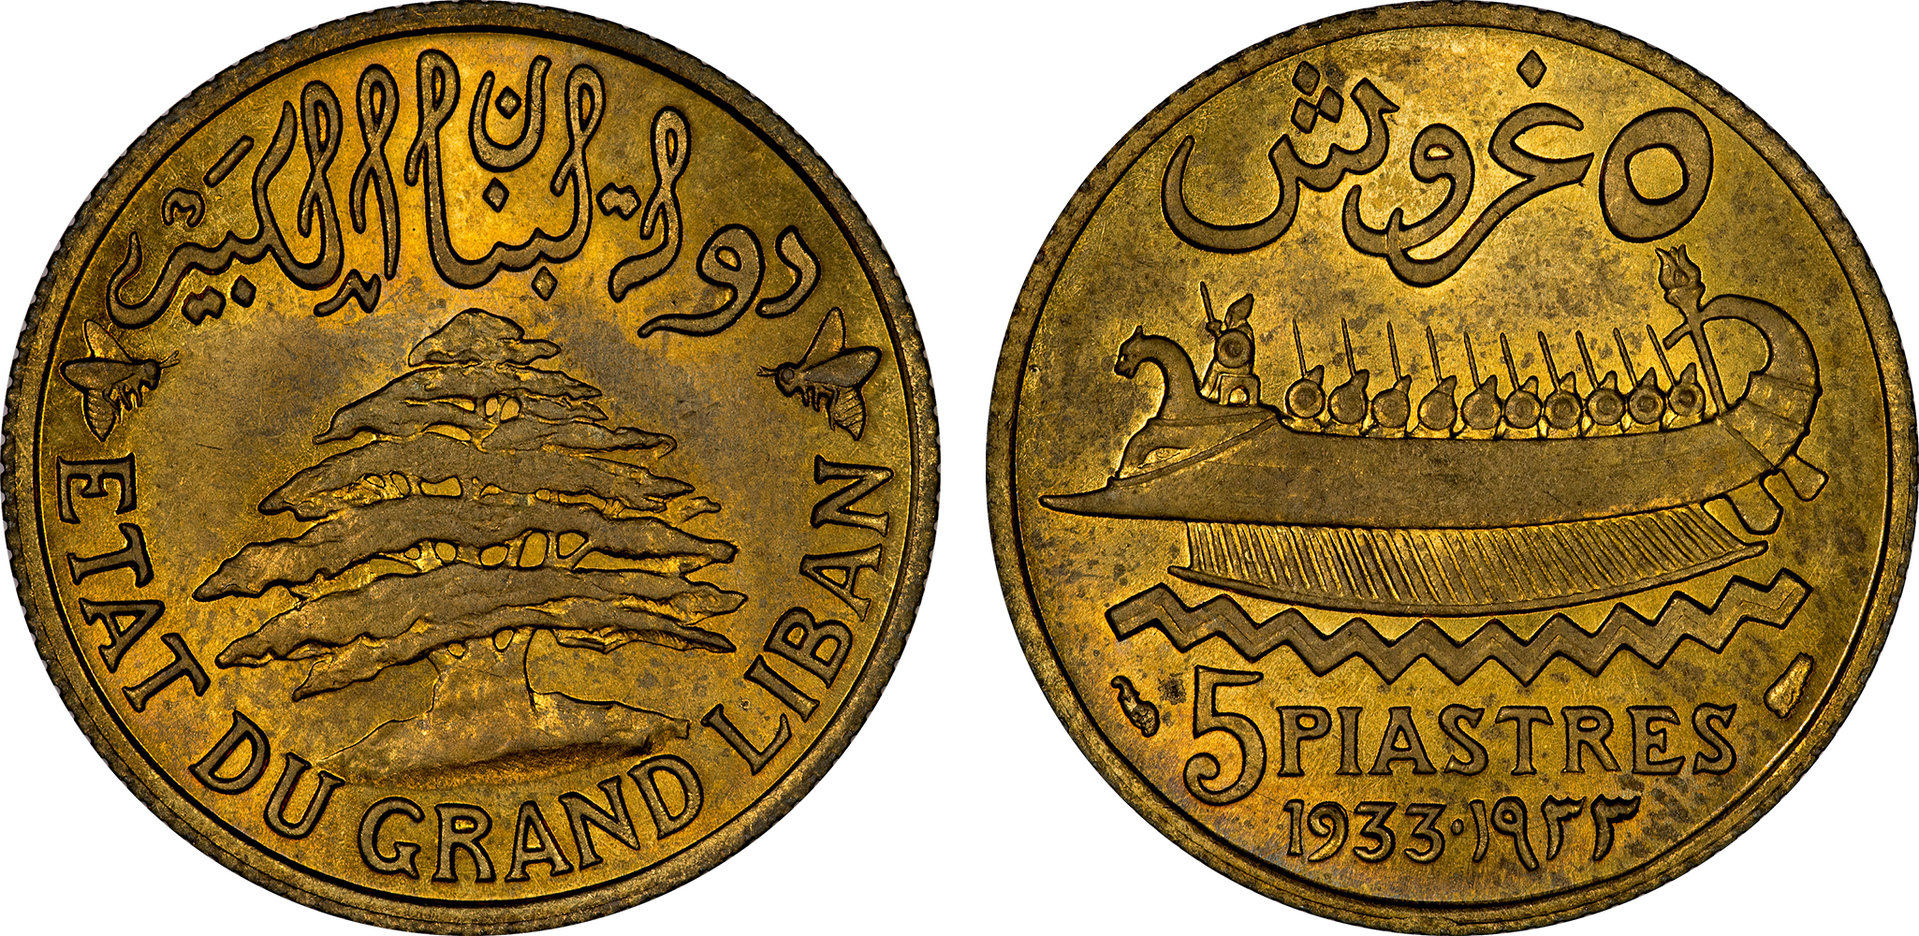 Lebanon - 1933 5 Piastres.jpg